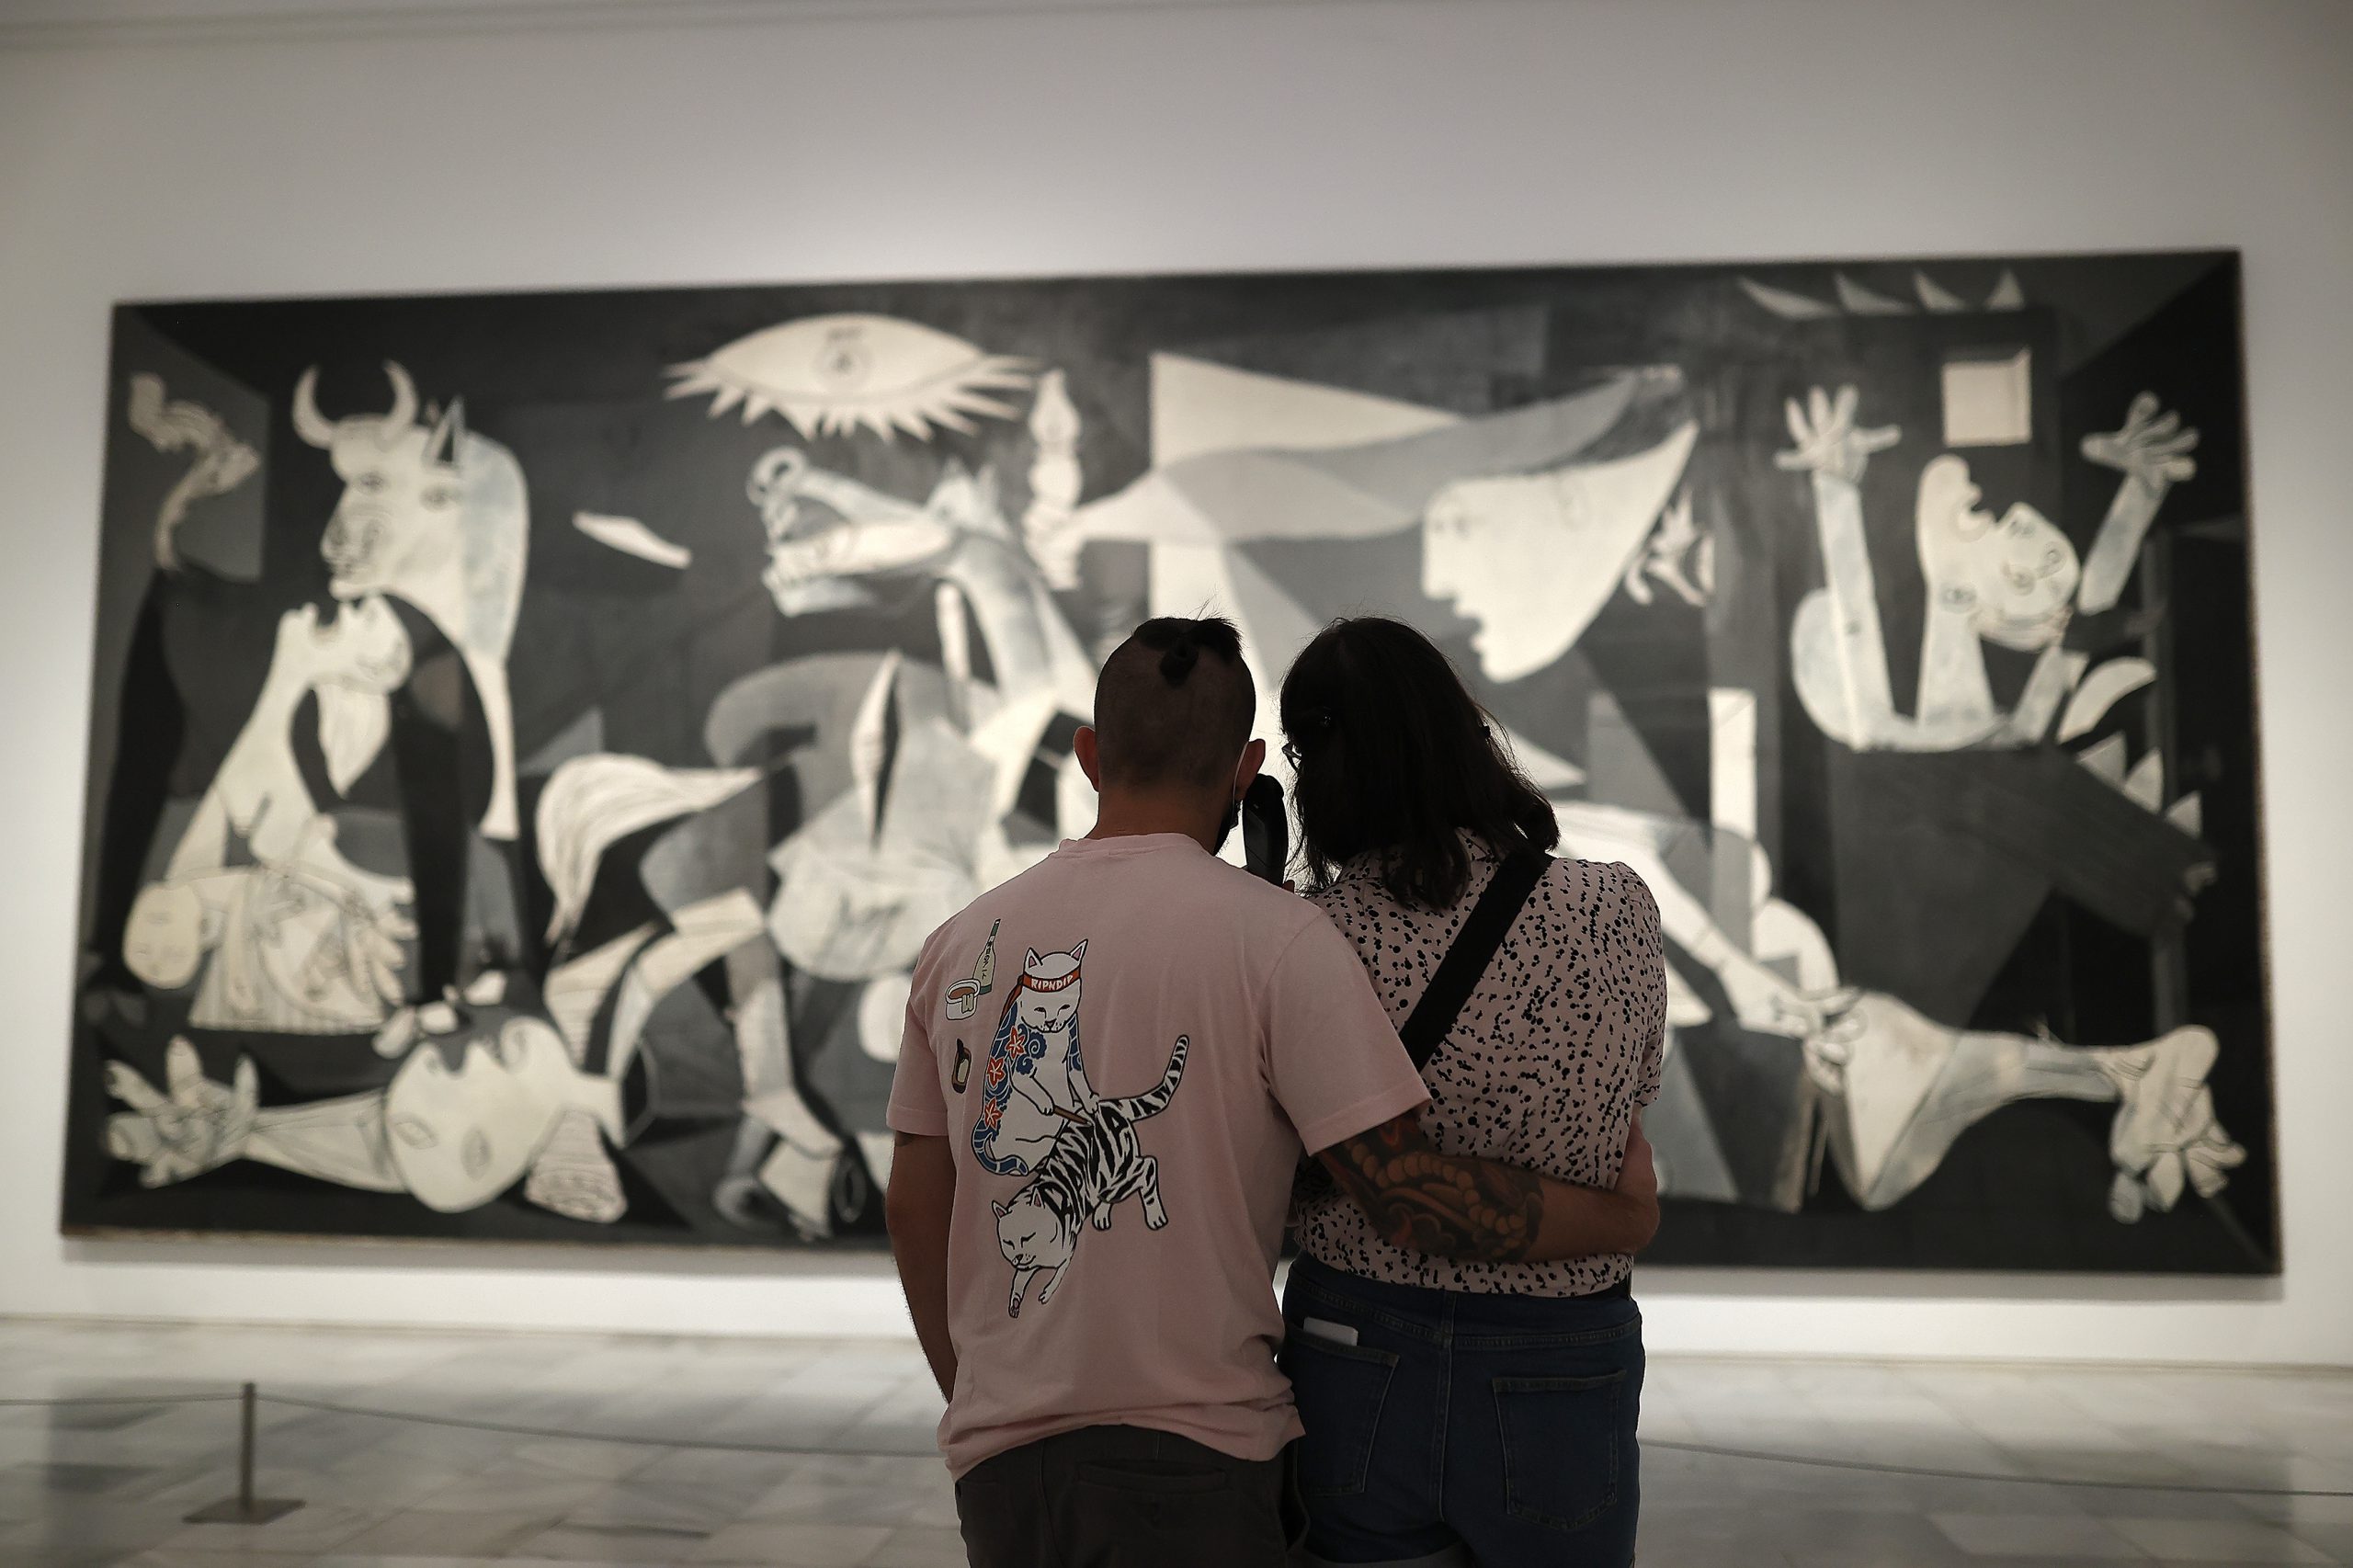 Picasso’nun Guernica tablosunun ilginç öyküsü